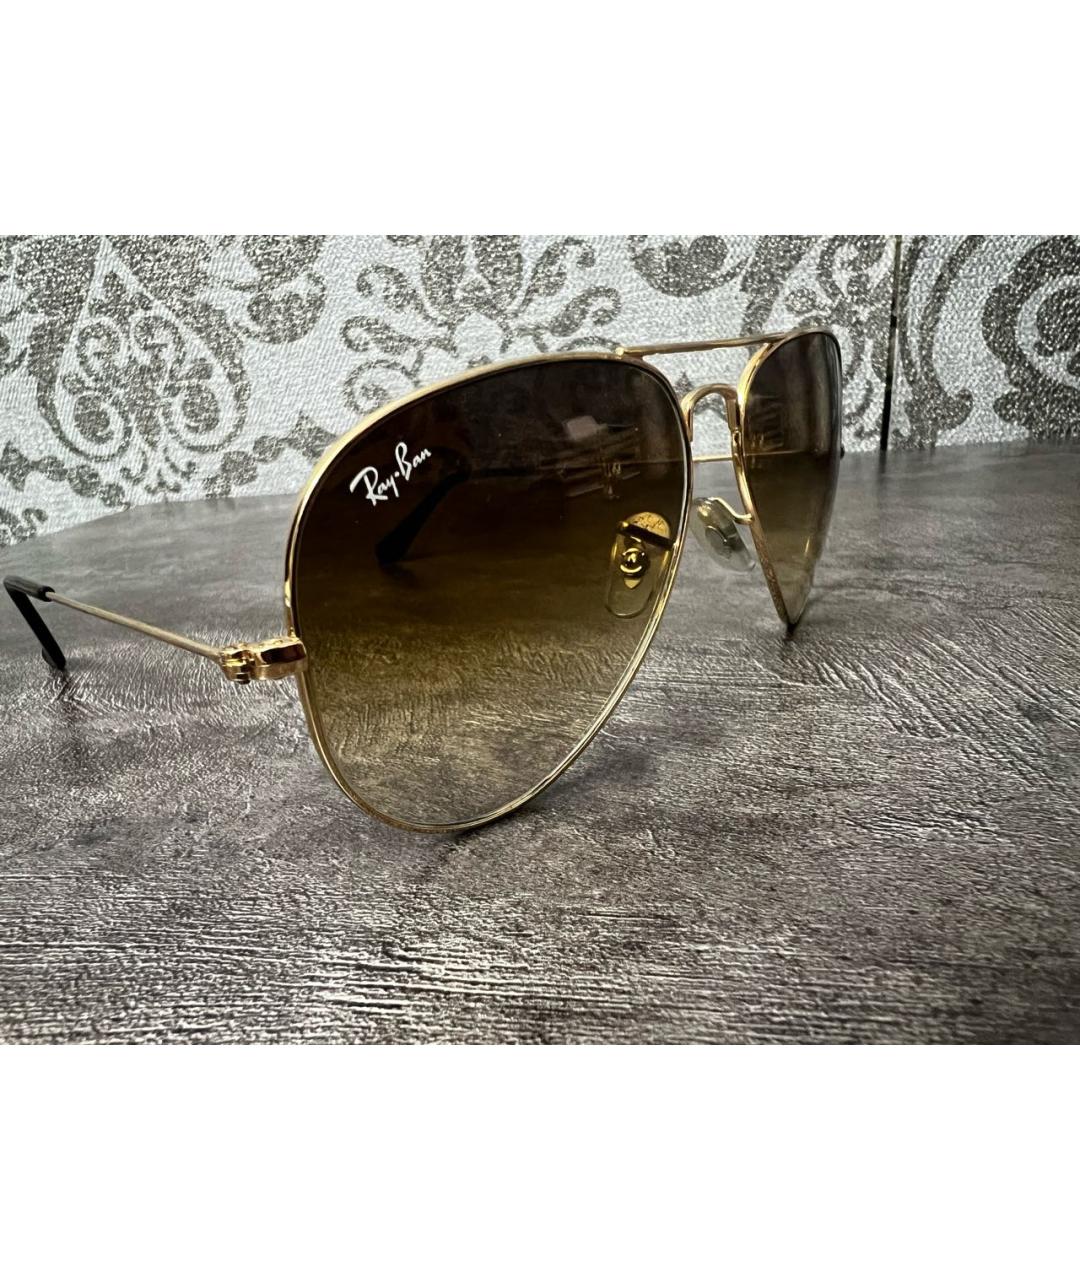 RAY BAN Золотые металлические солнцезащитные очки, фото 3